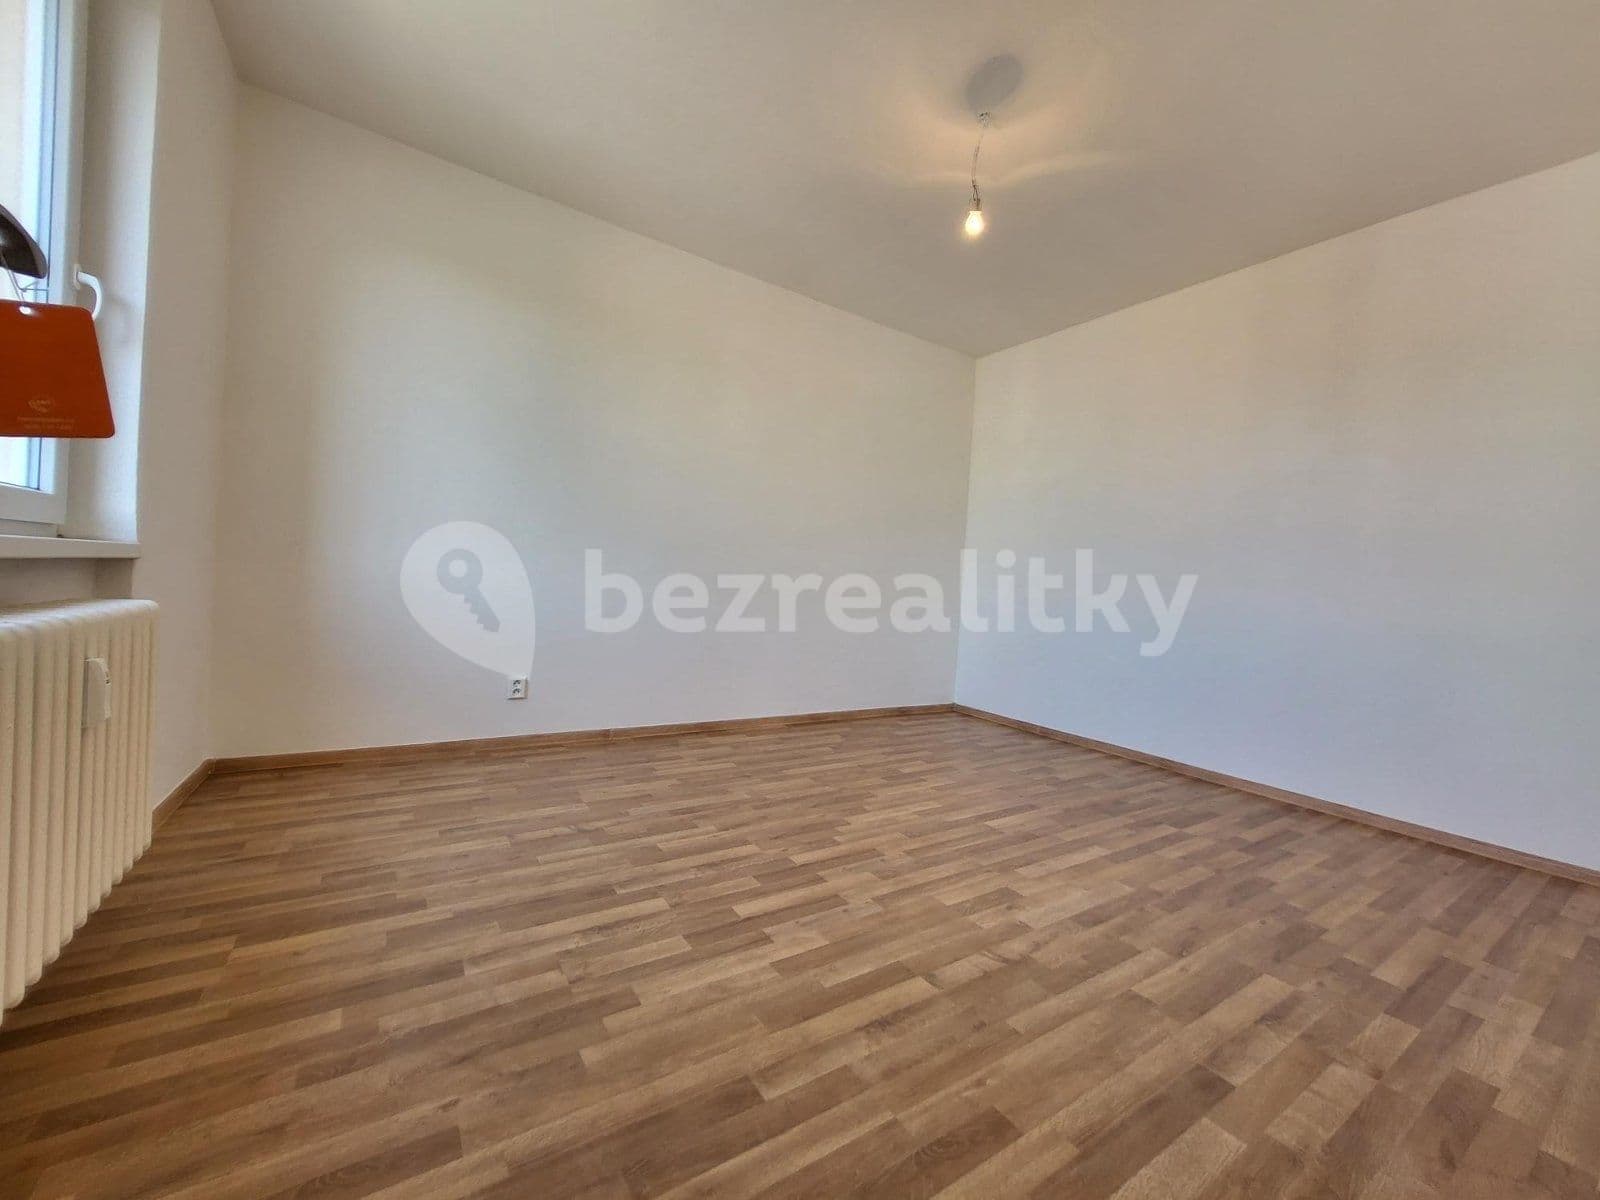 1 bedroom with open-plan kitchen flat to rent, 37 m², Dr. Glazera, Horní Suchá, Moravskoslezský Region